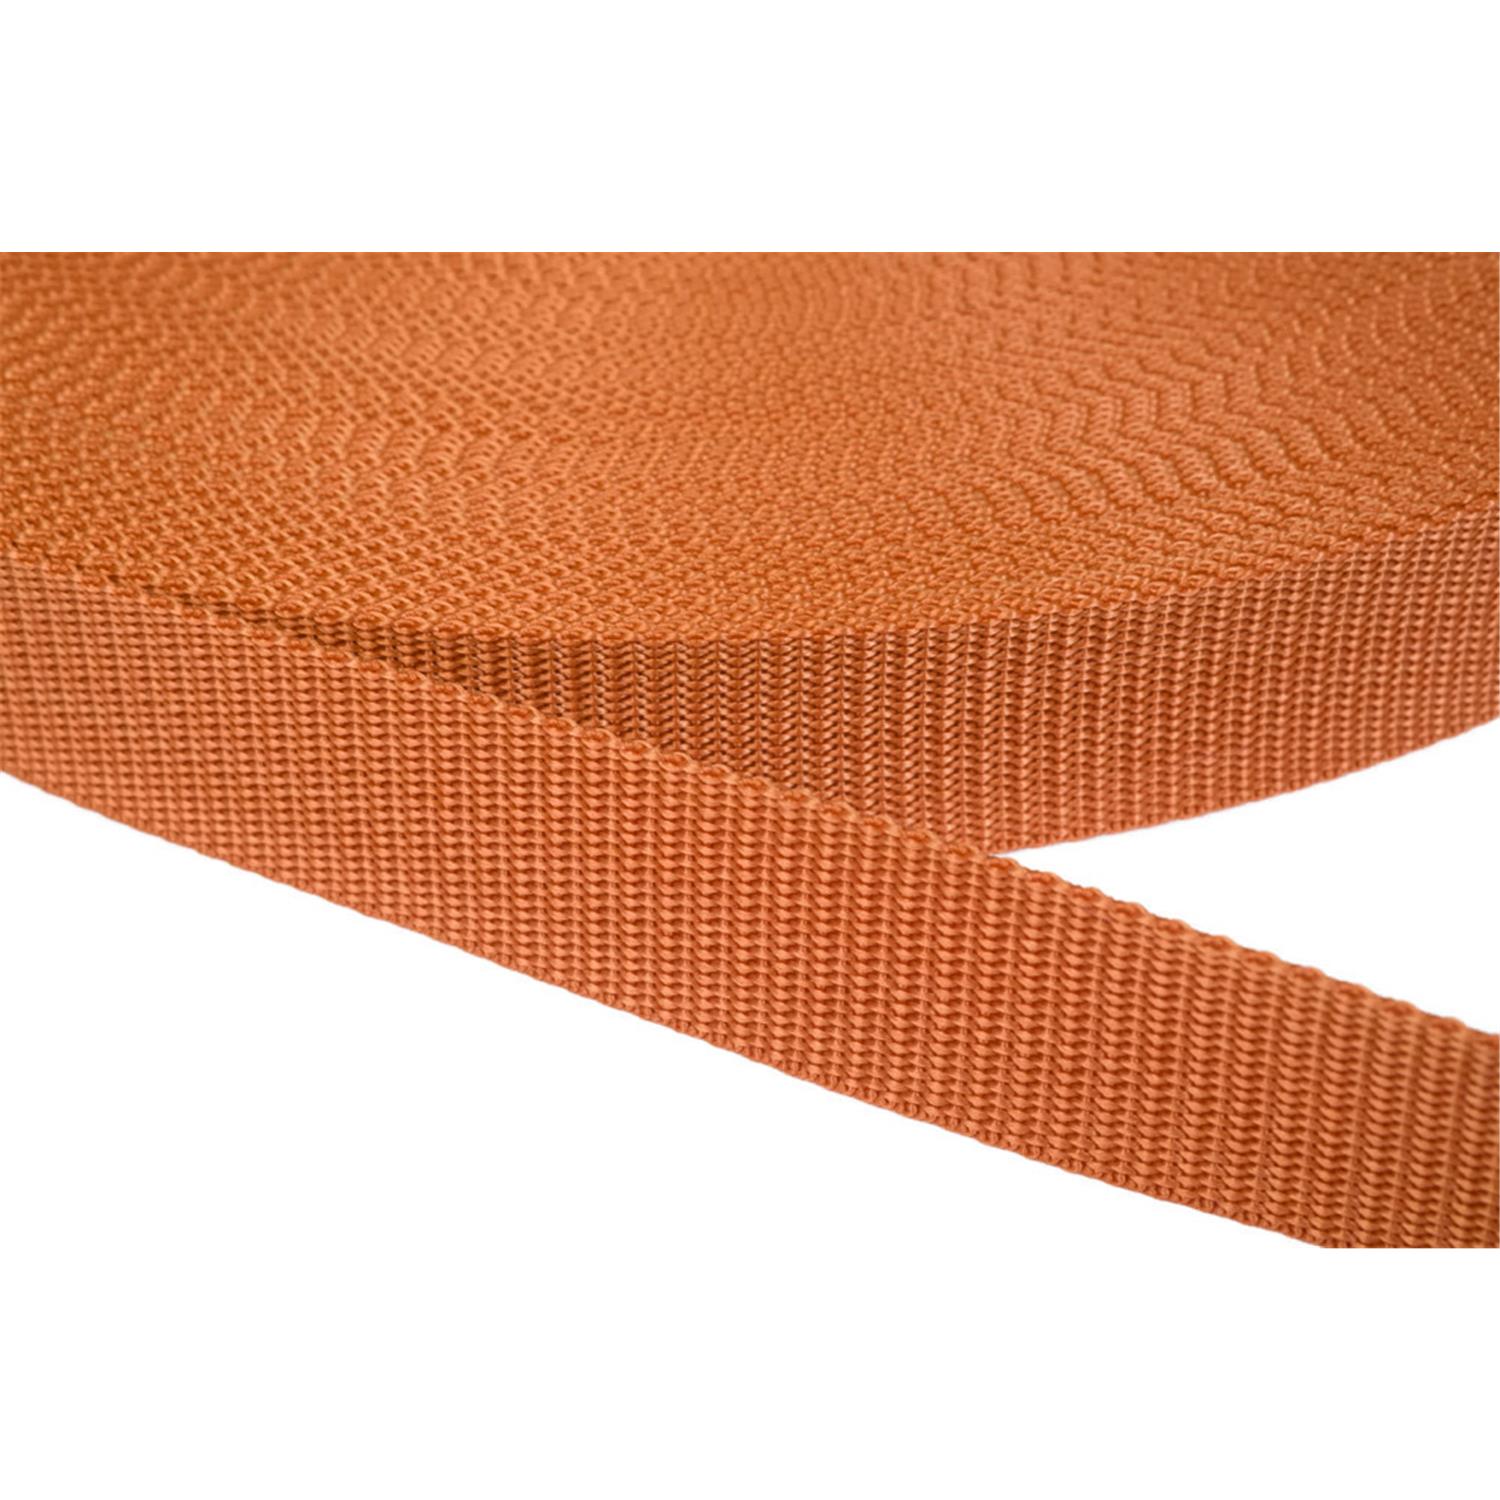 Gurtband 40mm breit aus Polypropylen in 41 Farben 05 - ockerbraun 12 Meter